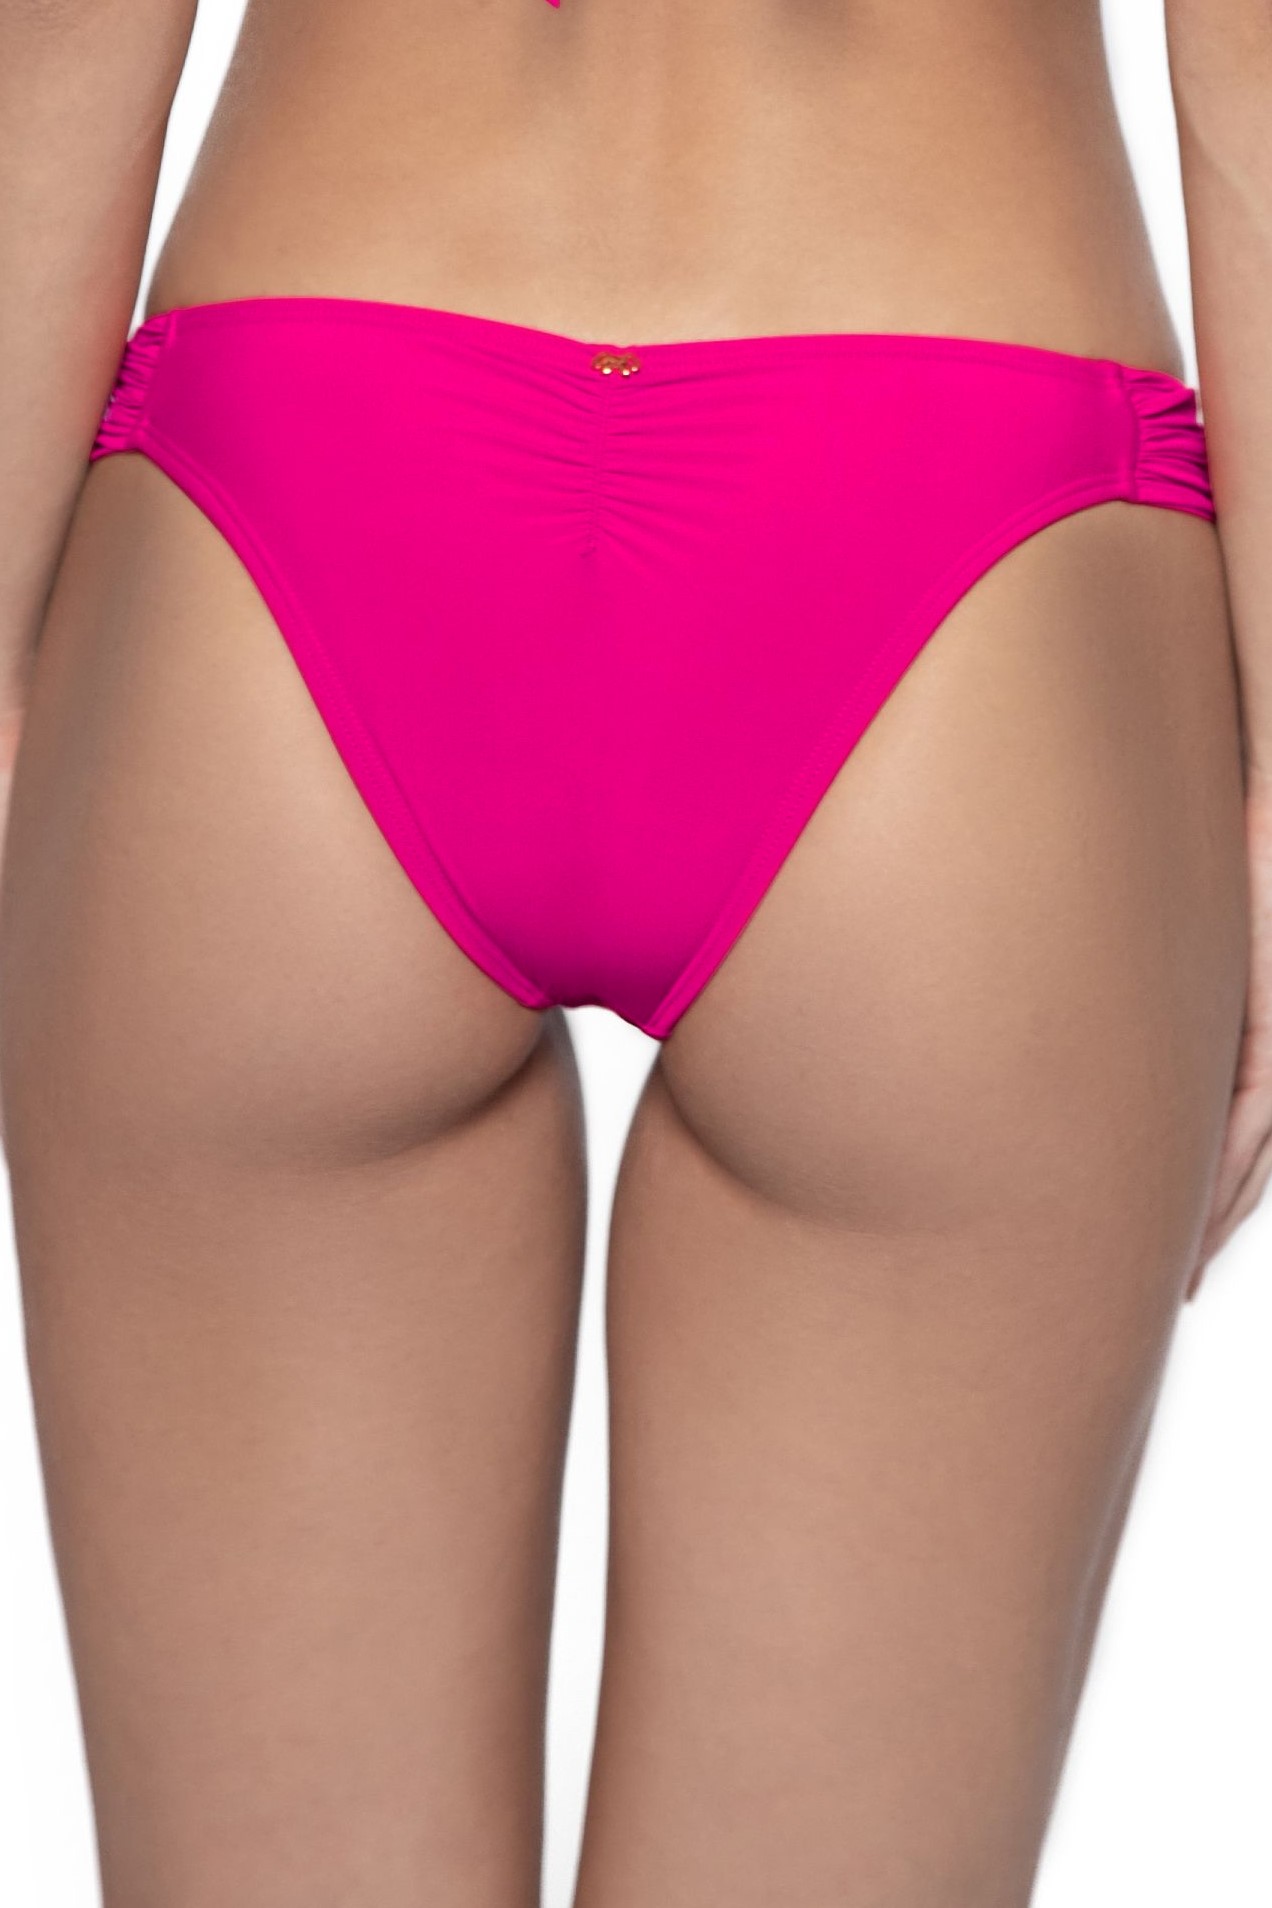 Pilyq Swim Cosmo Pink Lace Latin Bikini Bottom 